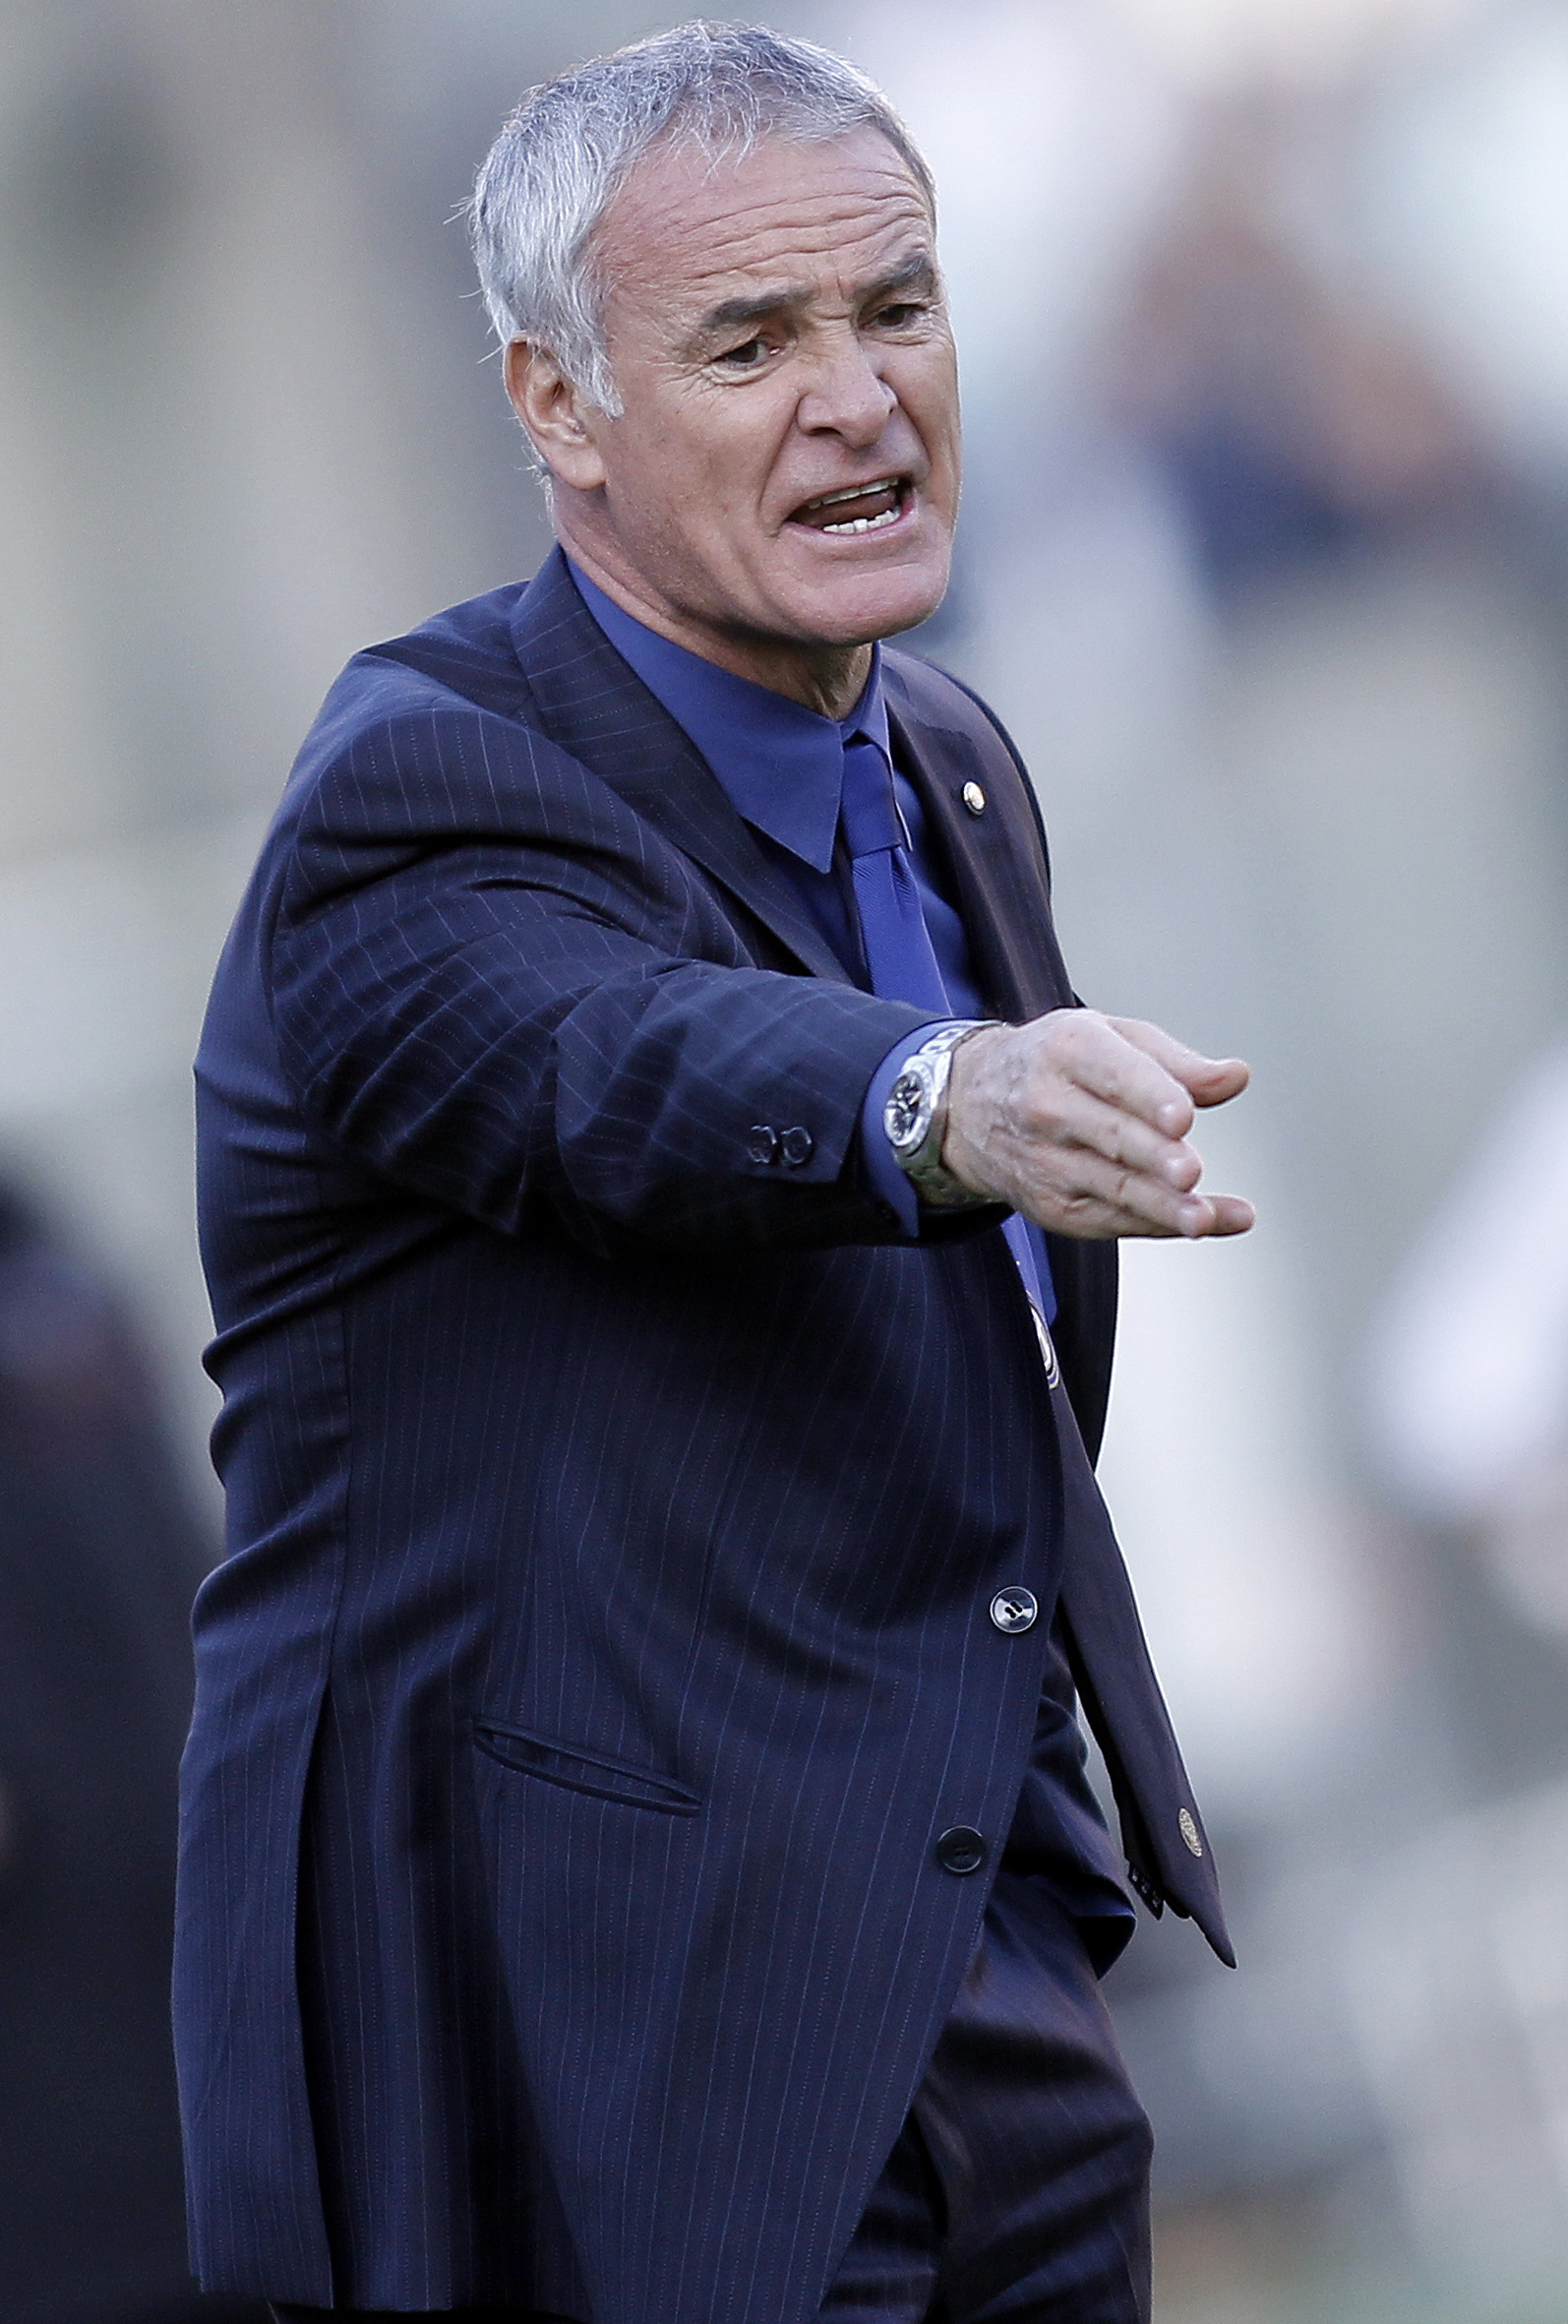 Claudio Ranieris Inter tog en välbehövling trepoängare. Men det satt väldigt hårt inne.